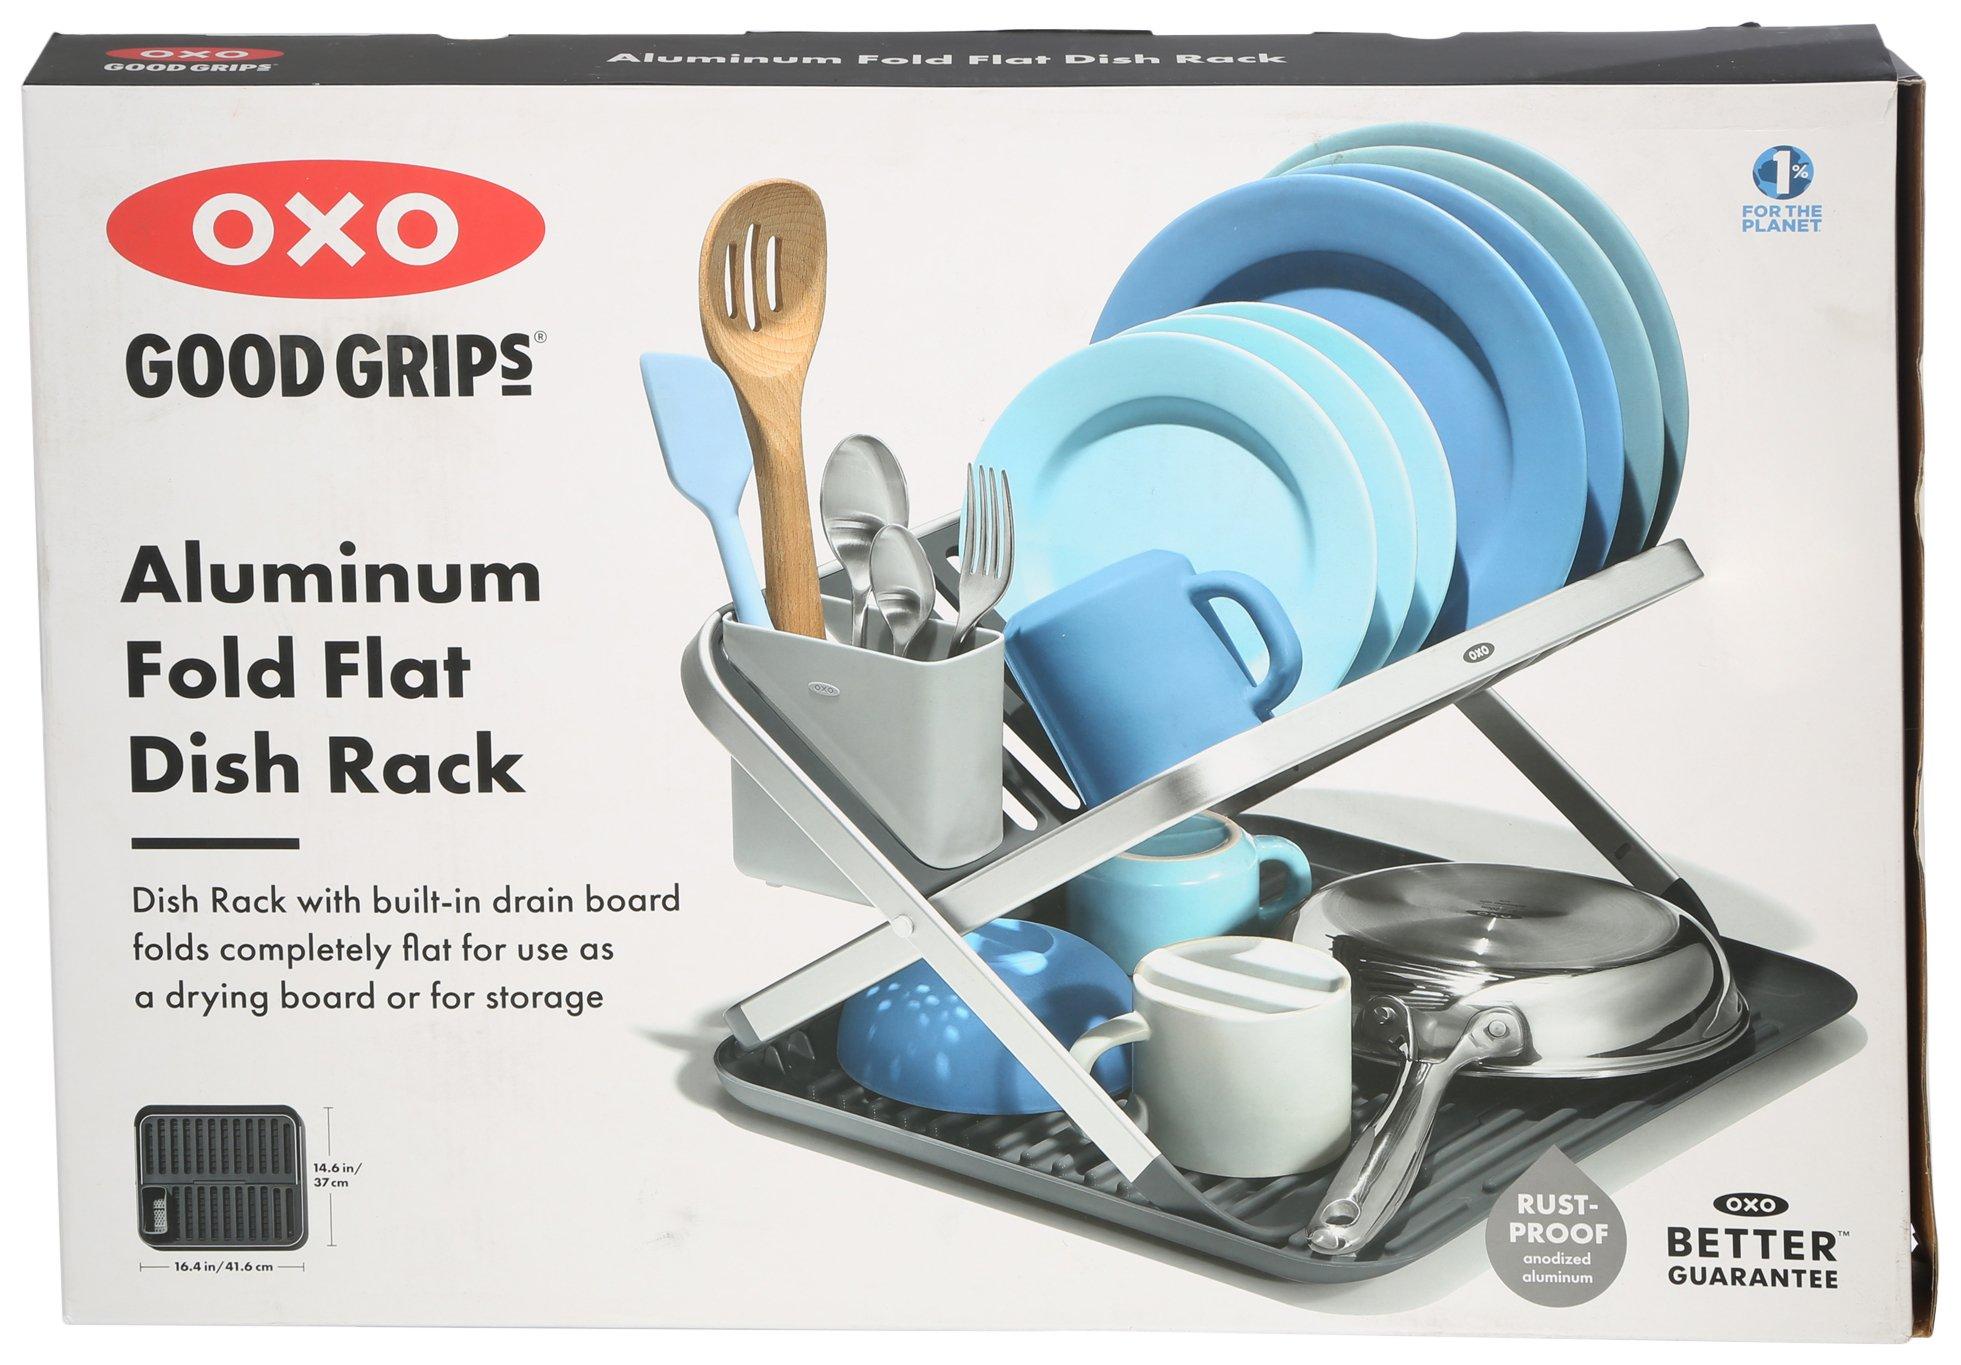 Aluminum Fold Flat Dish Rack